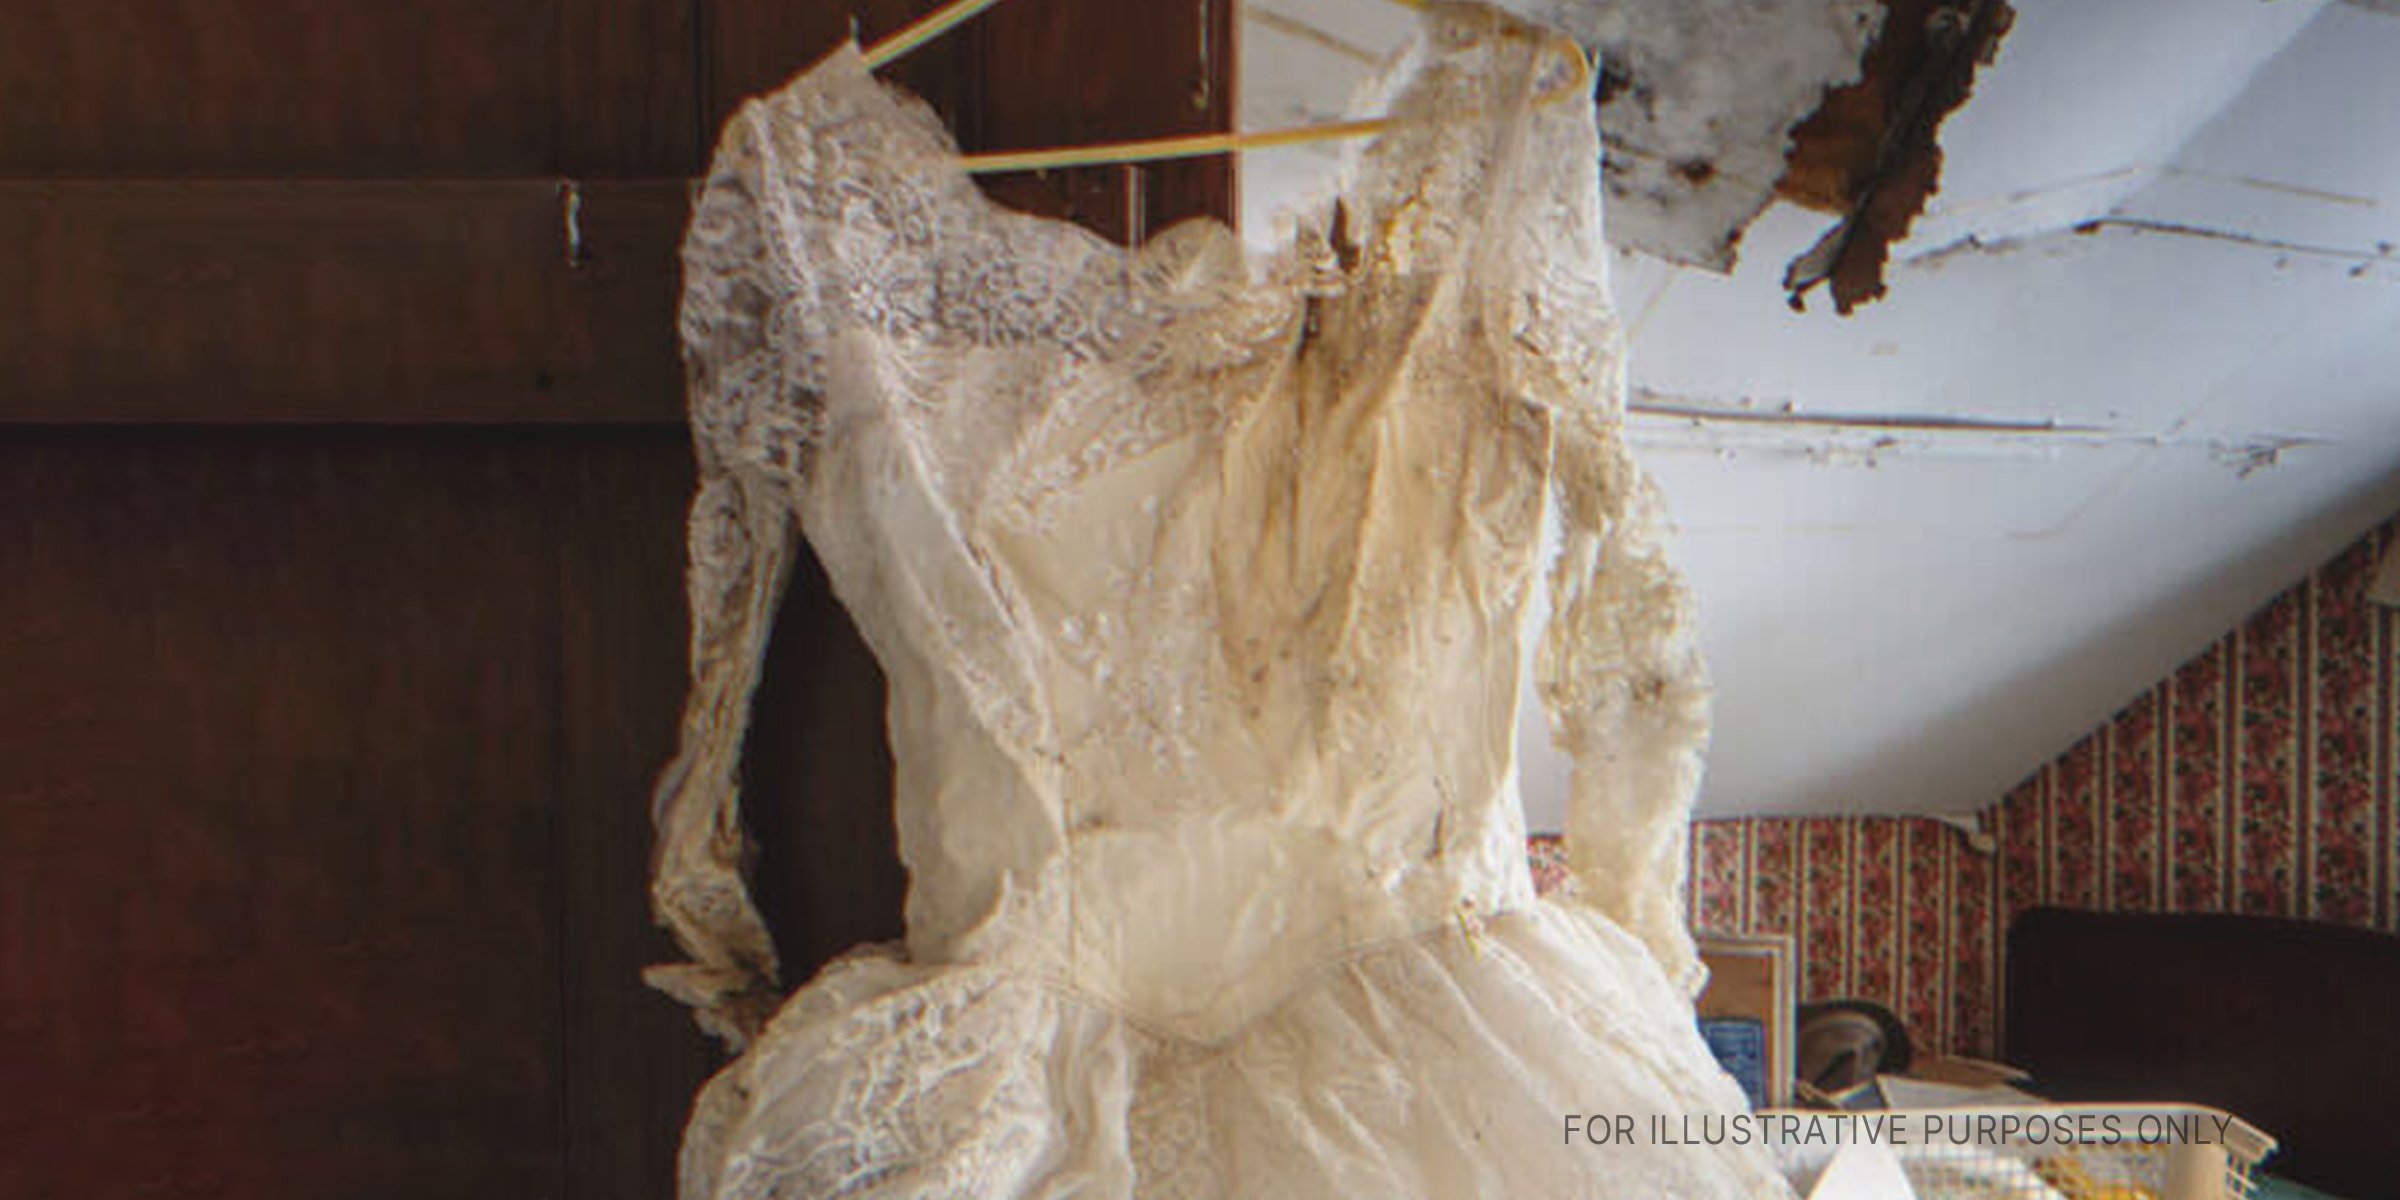 Zerrissenes Hochzeitskleid | Quelle: Shuttershock